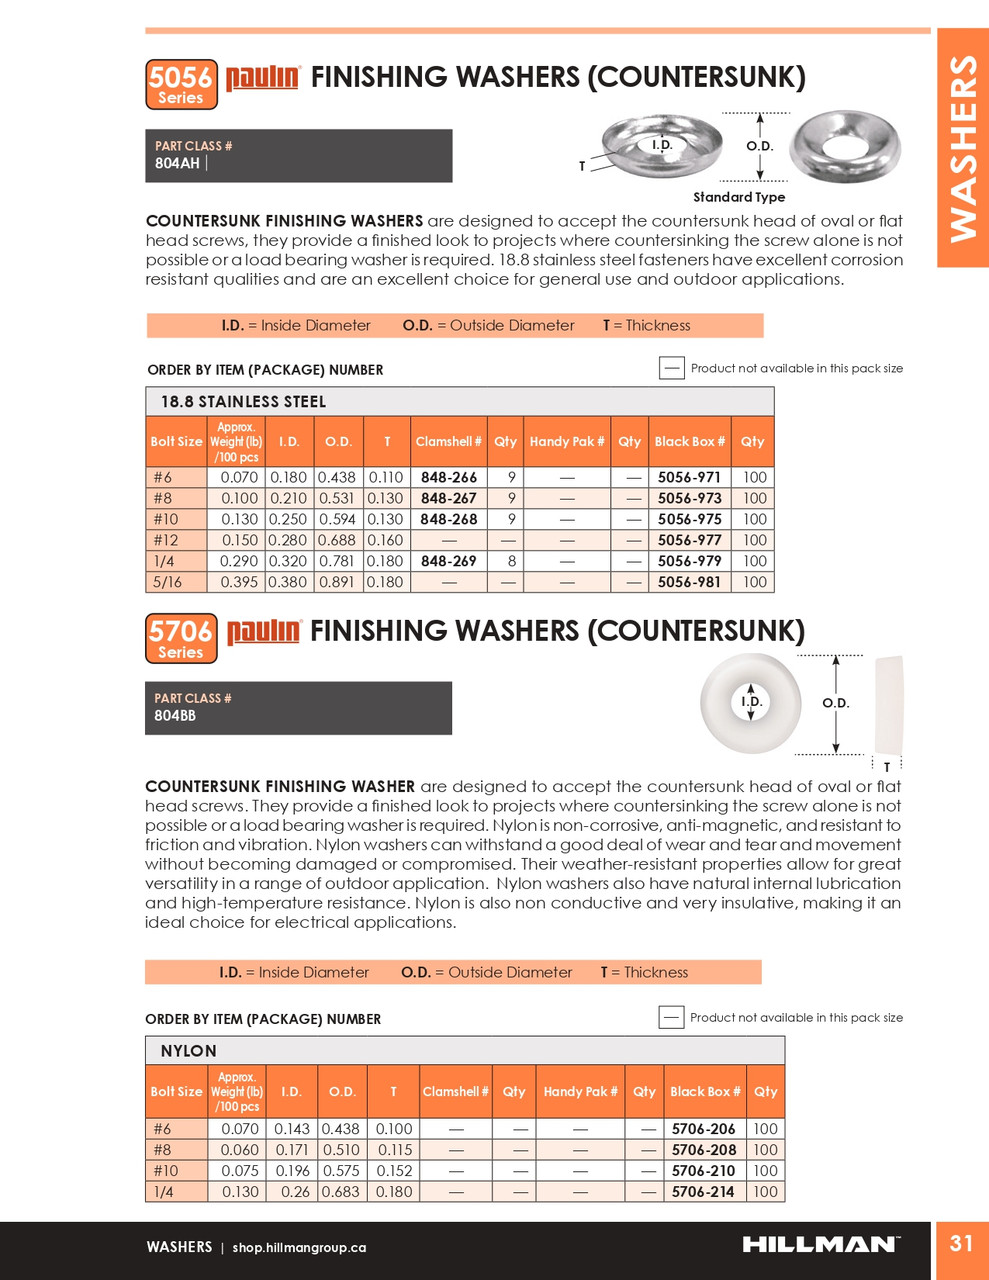 #8 Nylon Finishing Washer 100 Pc.   5706-208